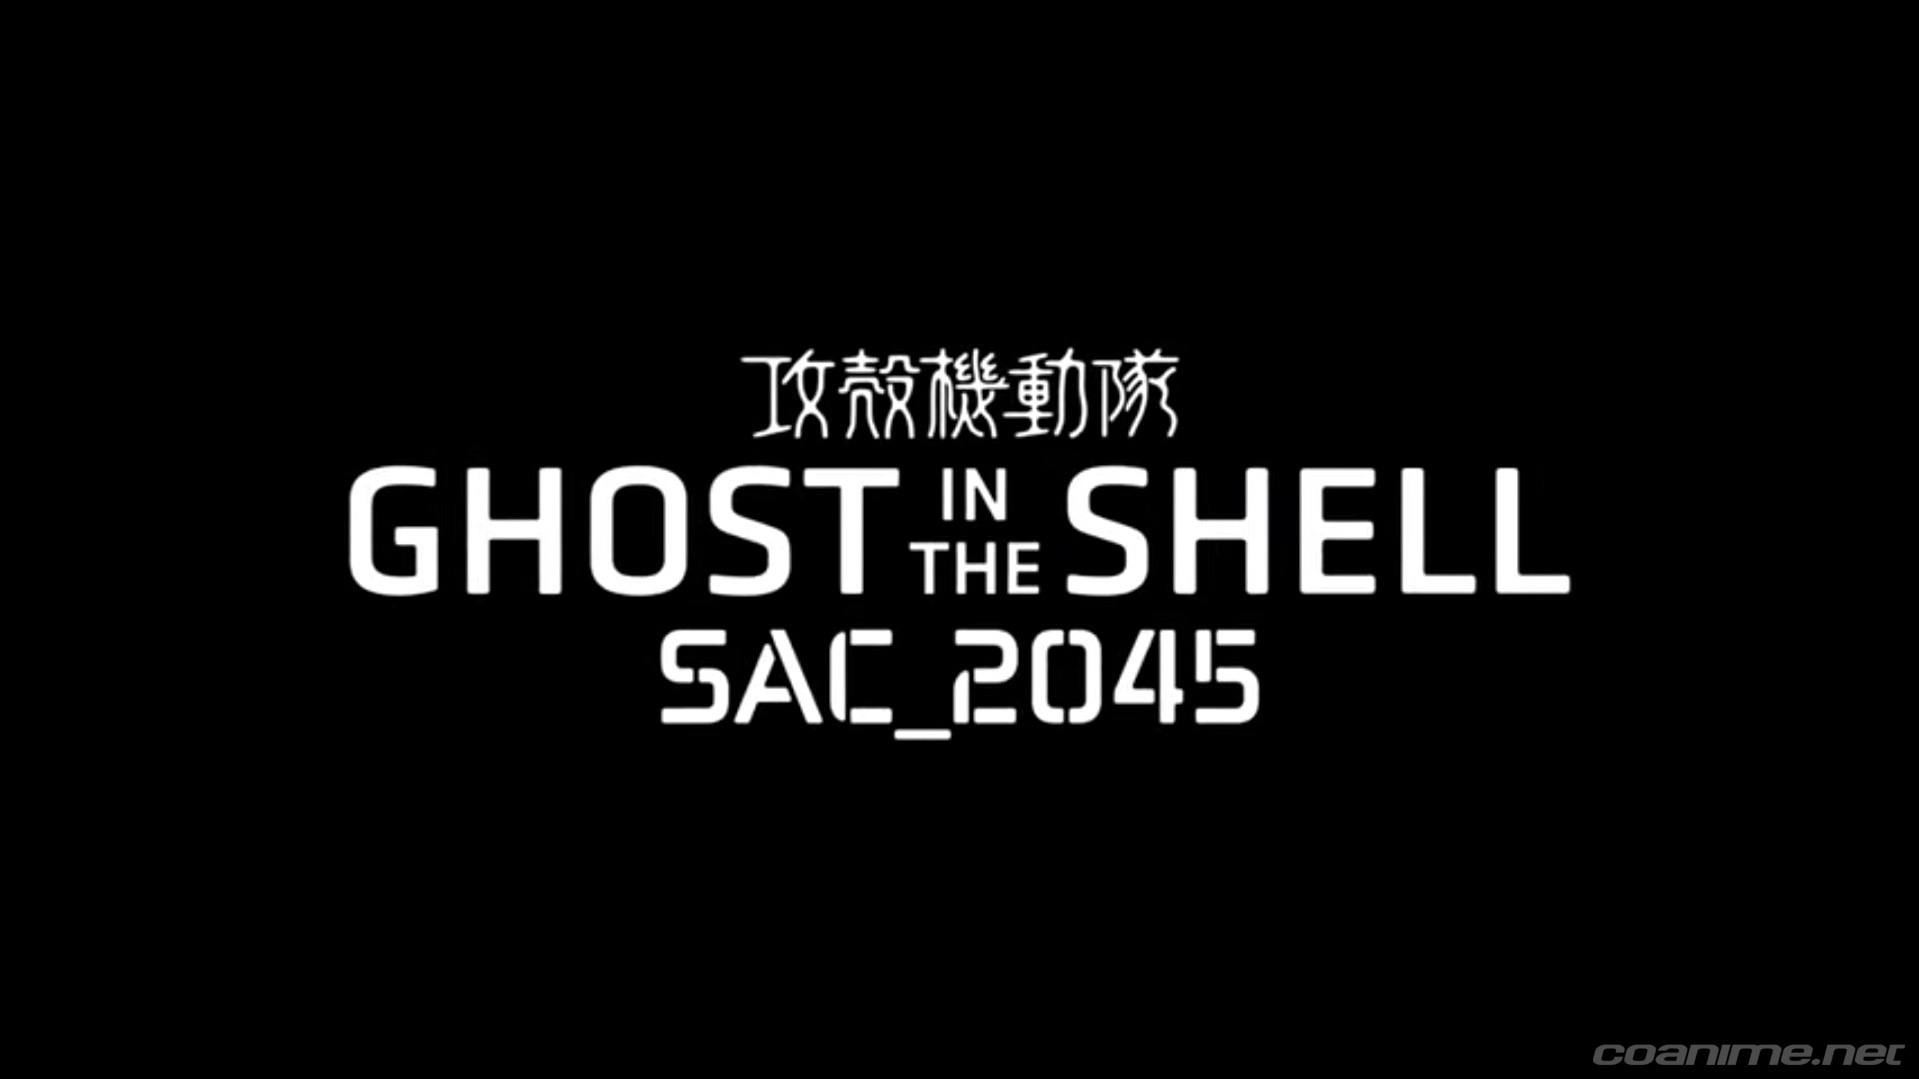 Revelan trailer del nuevo anime Ghost in the Shell: SAC_2045, se estrenara en Primavera del 2020 - Coanime.net